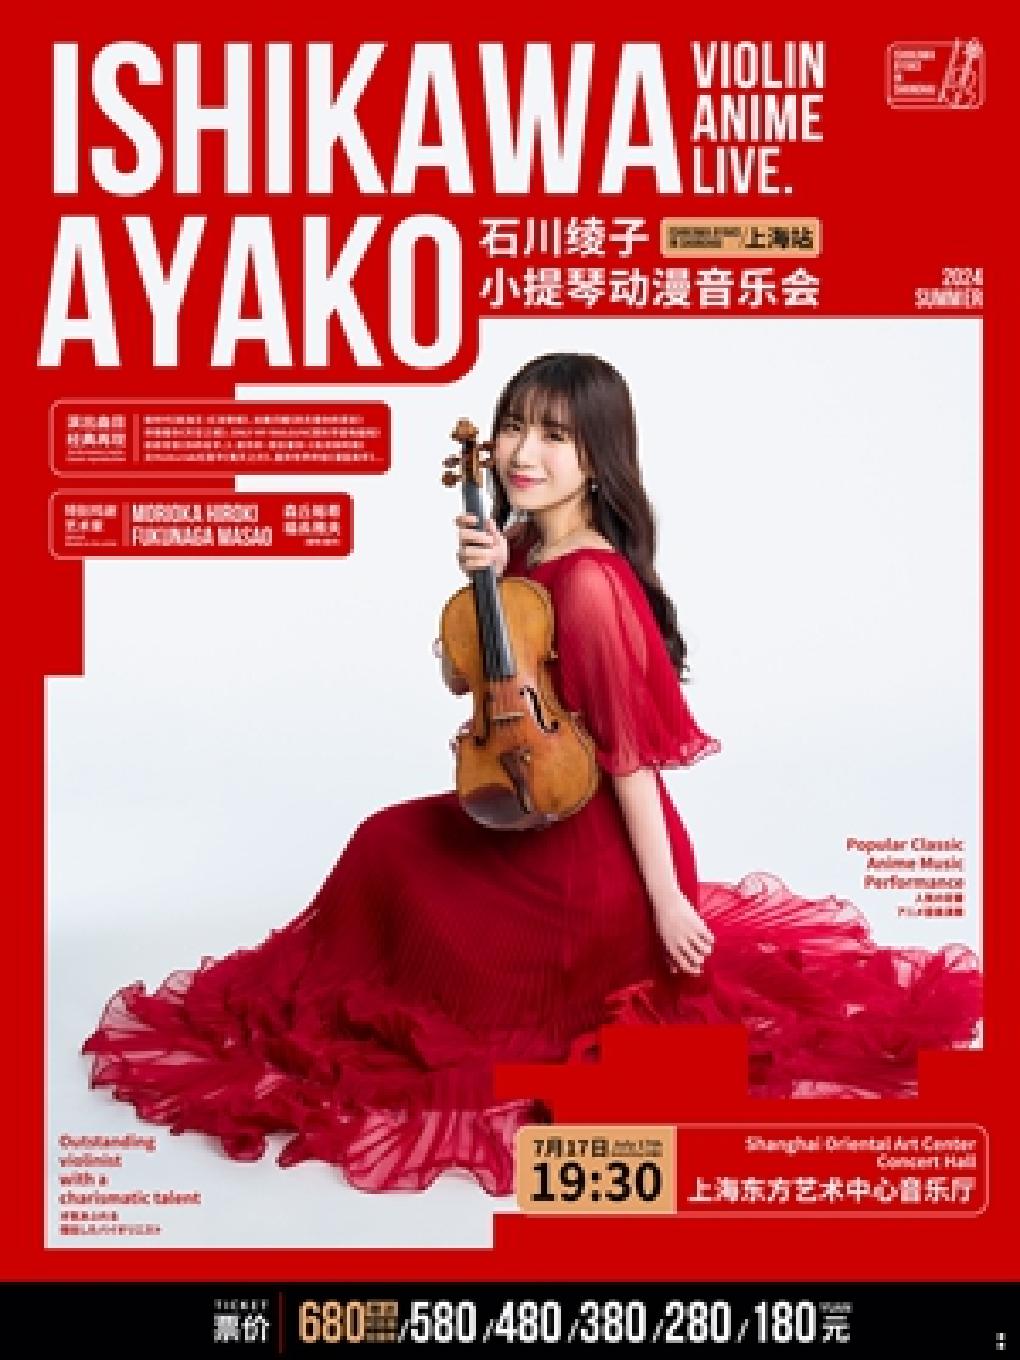 石川绫子小提琴动漫音乐会上海站